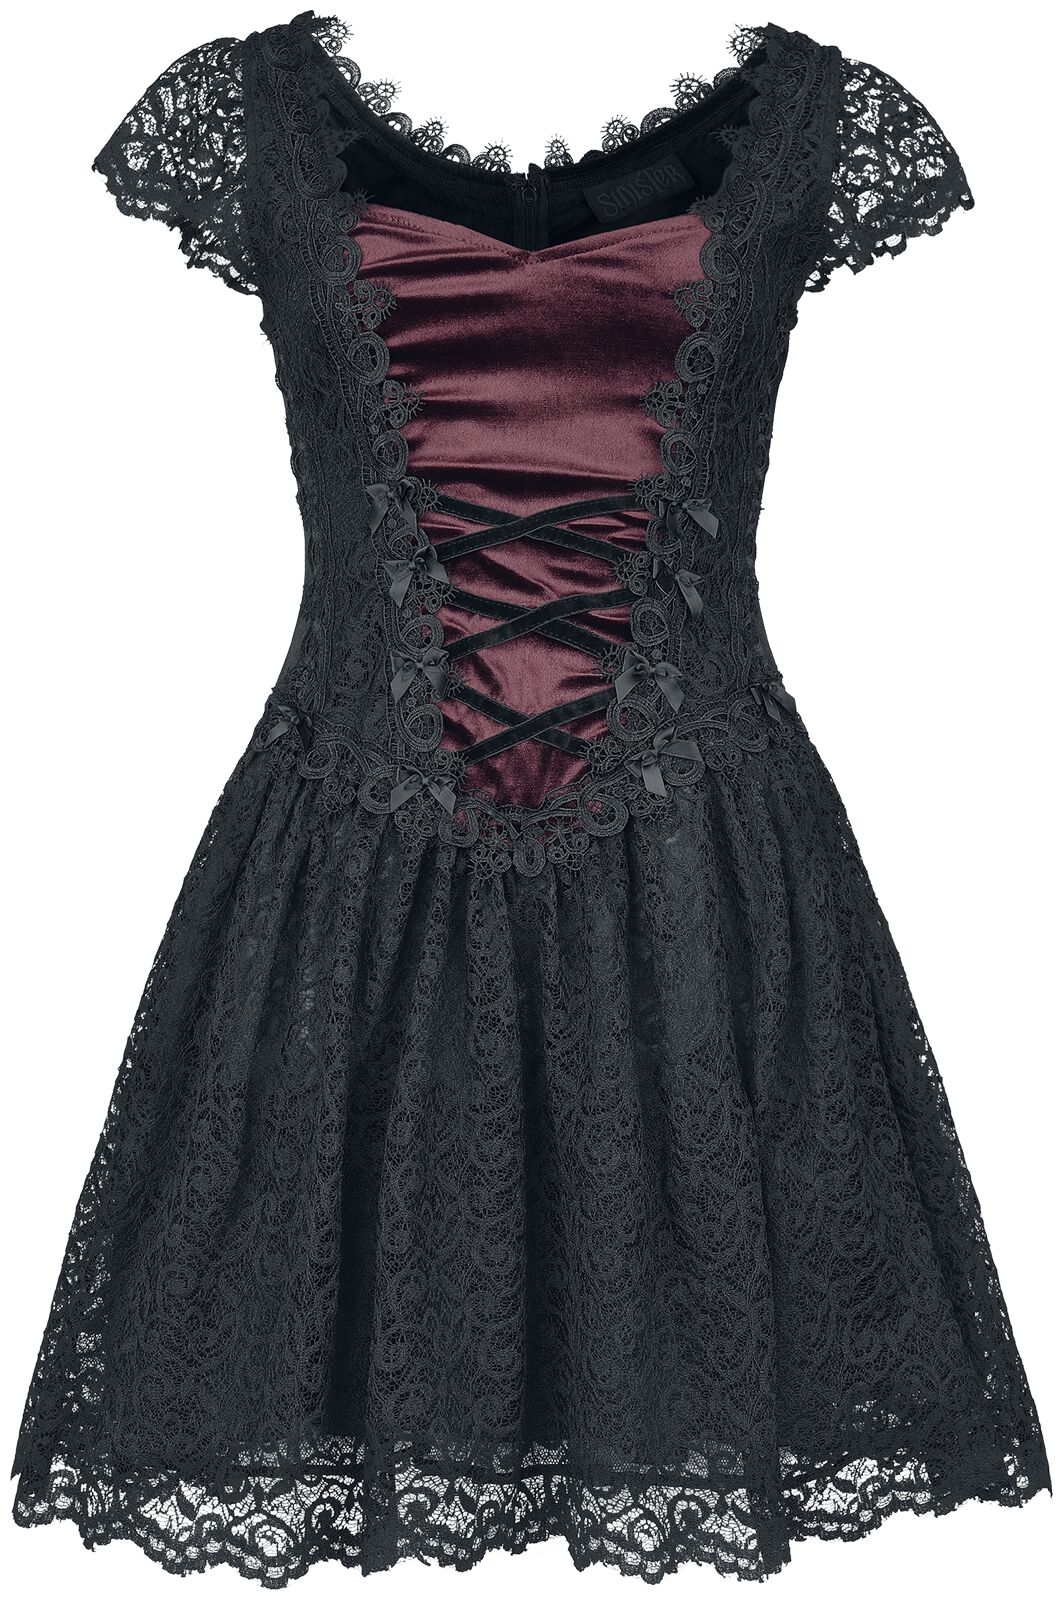 Robe courte Gothic de Sinister Gothic - Robe Gothique - XS à 3XL - pour Femme - noir/rouge